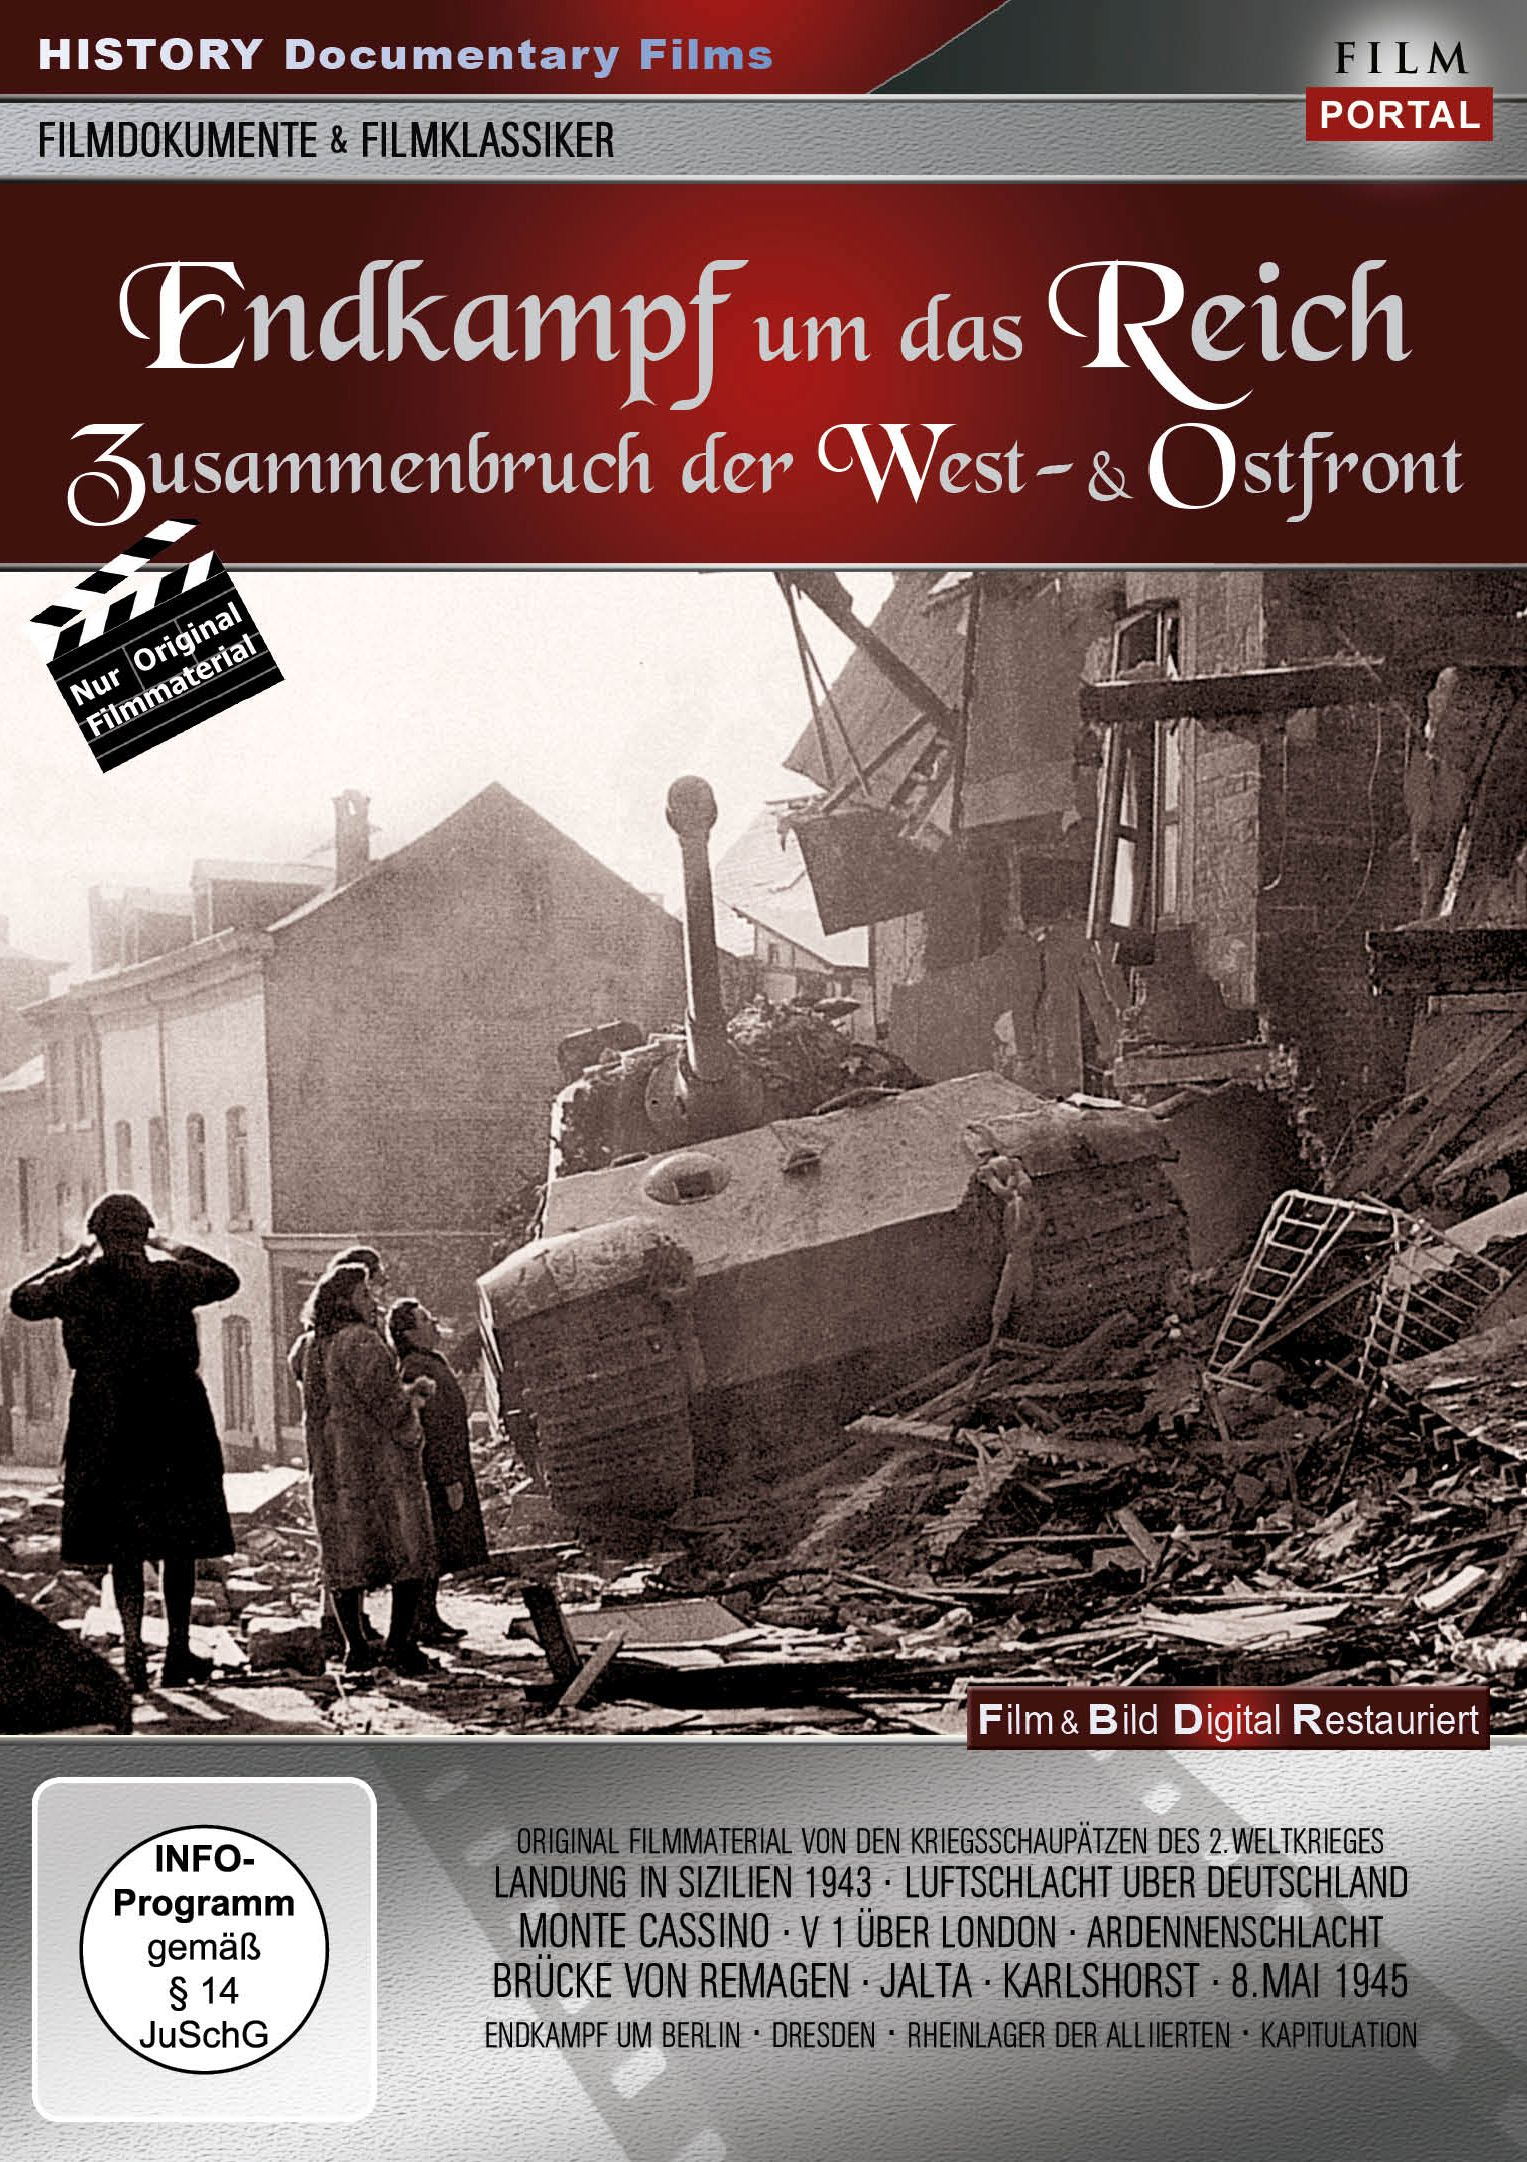 DVD um das Endkampf Reich